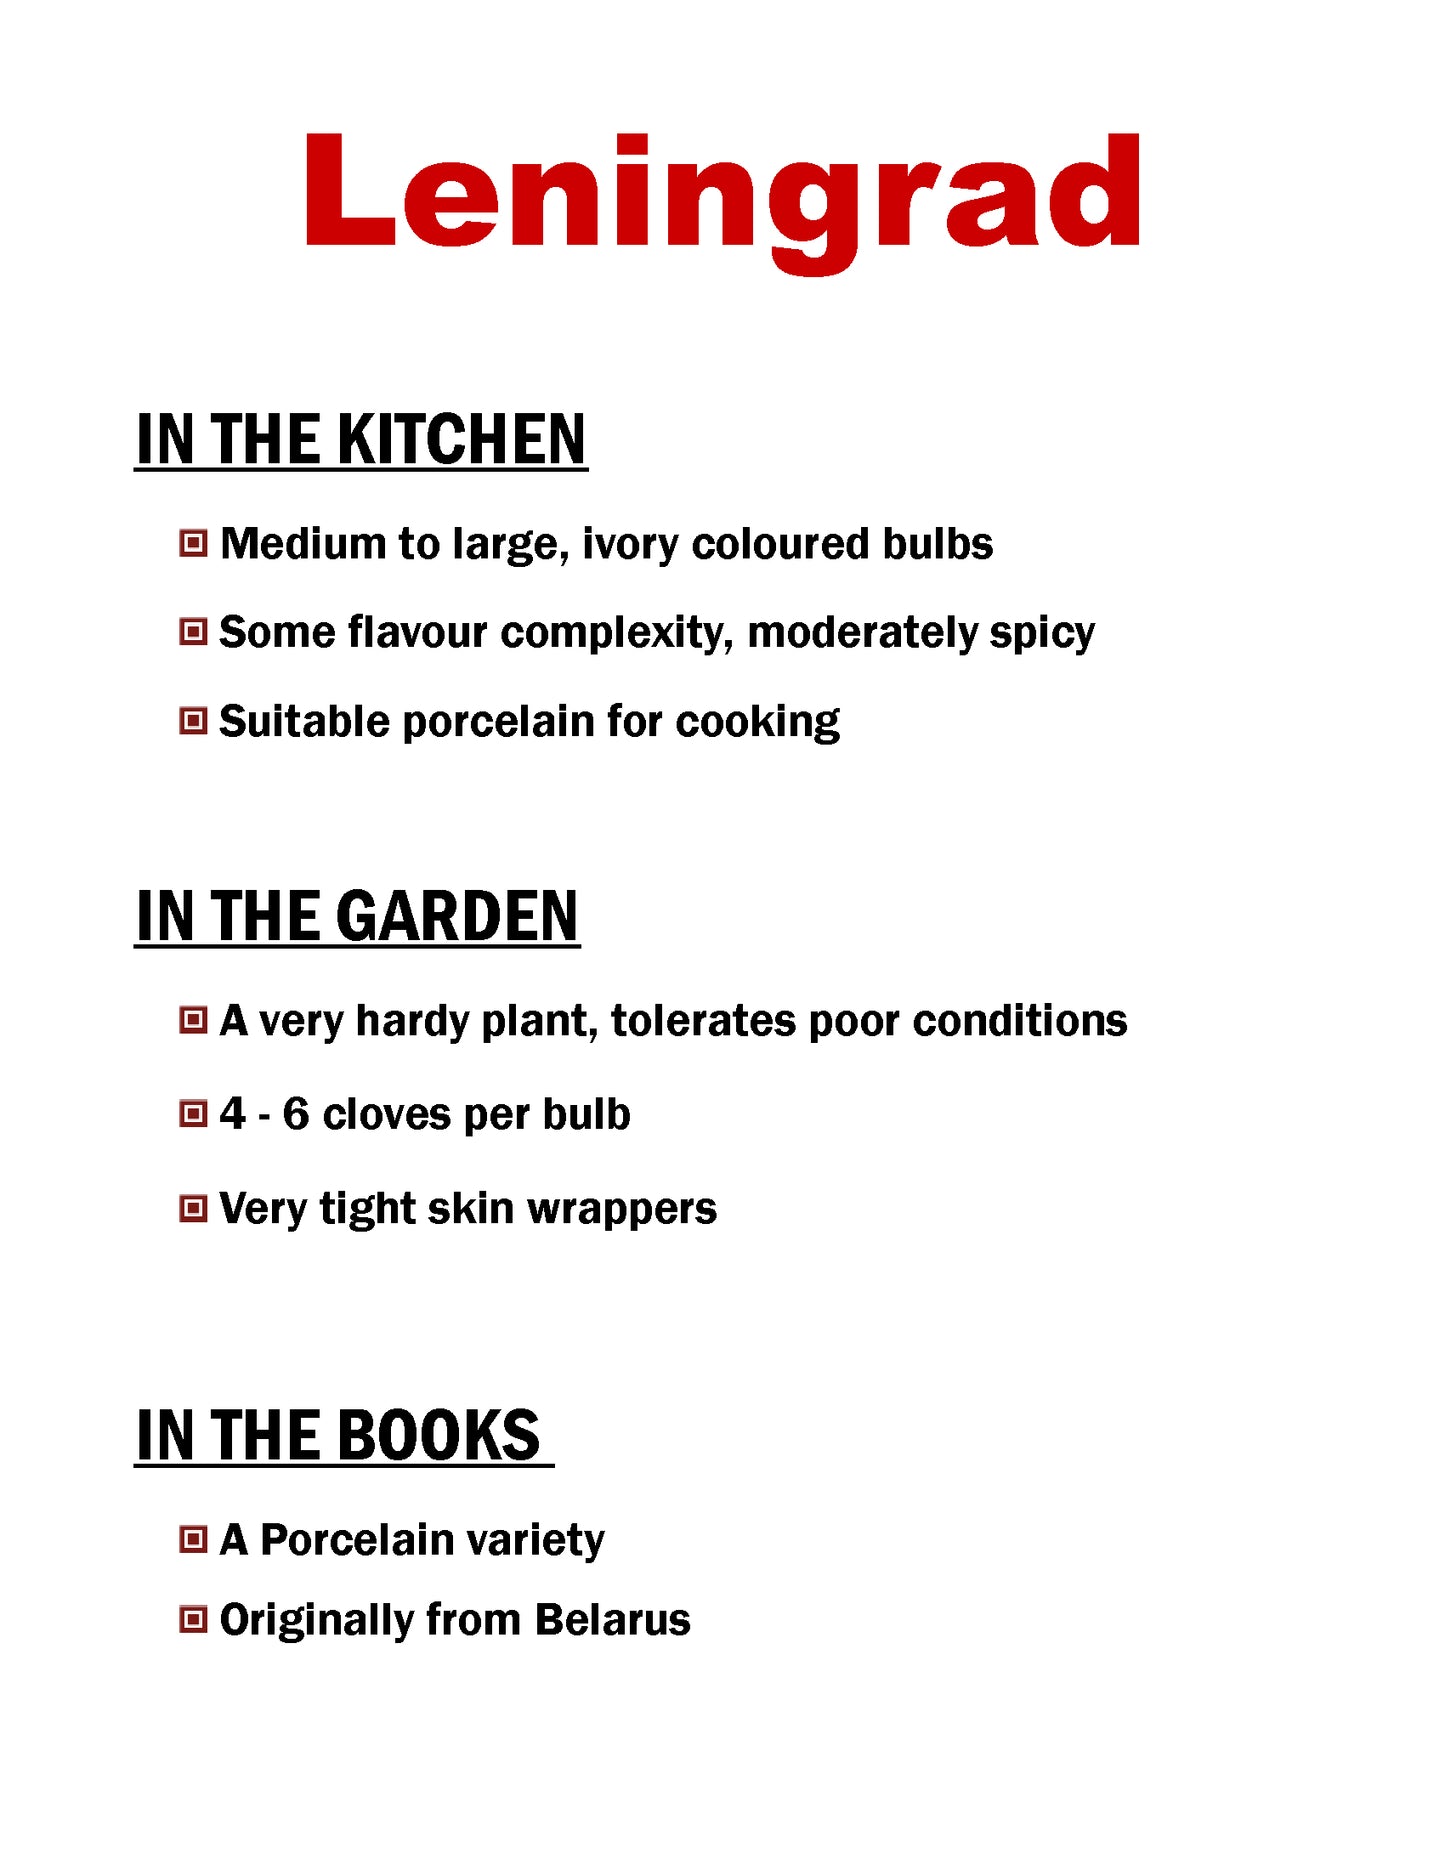 Leningrad garlic, porcelain garlic description card by Garlicloves